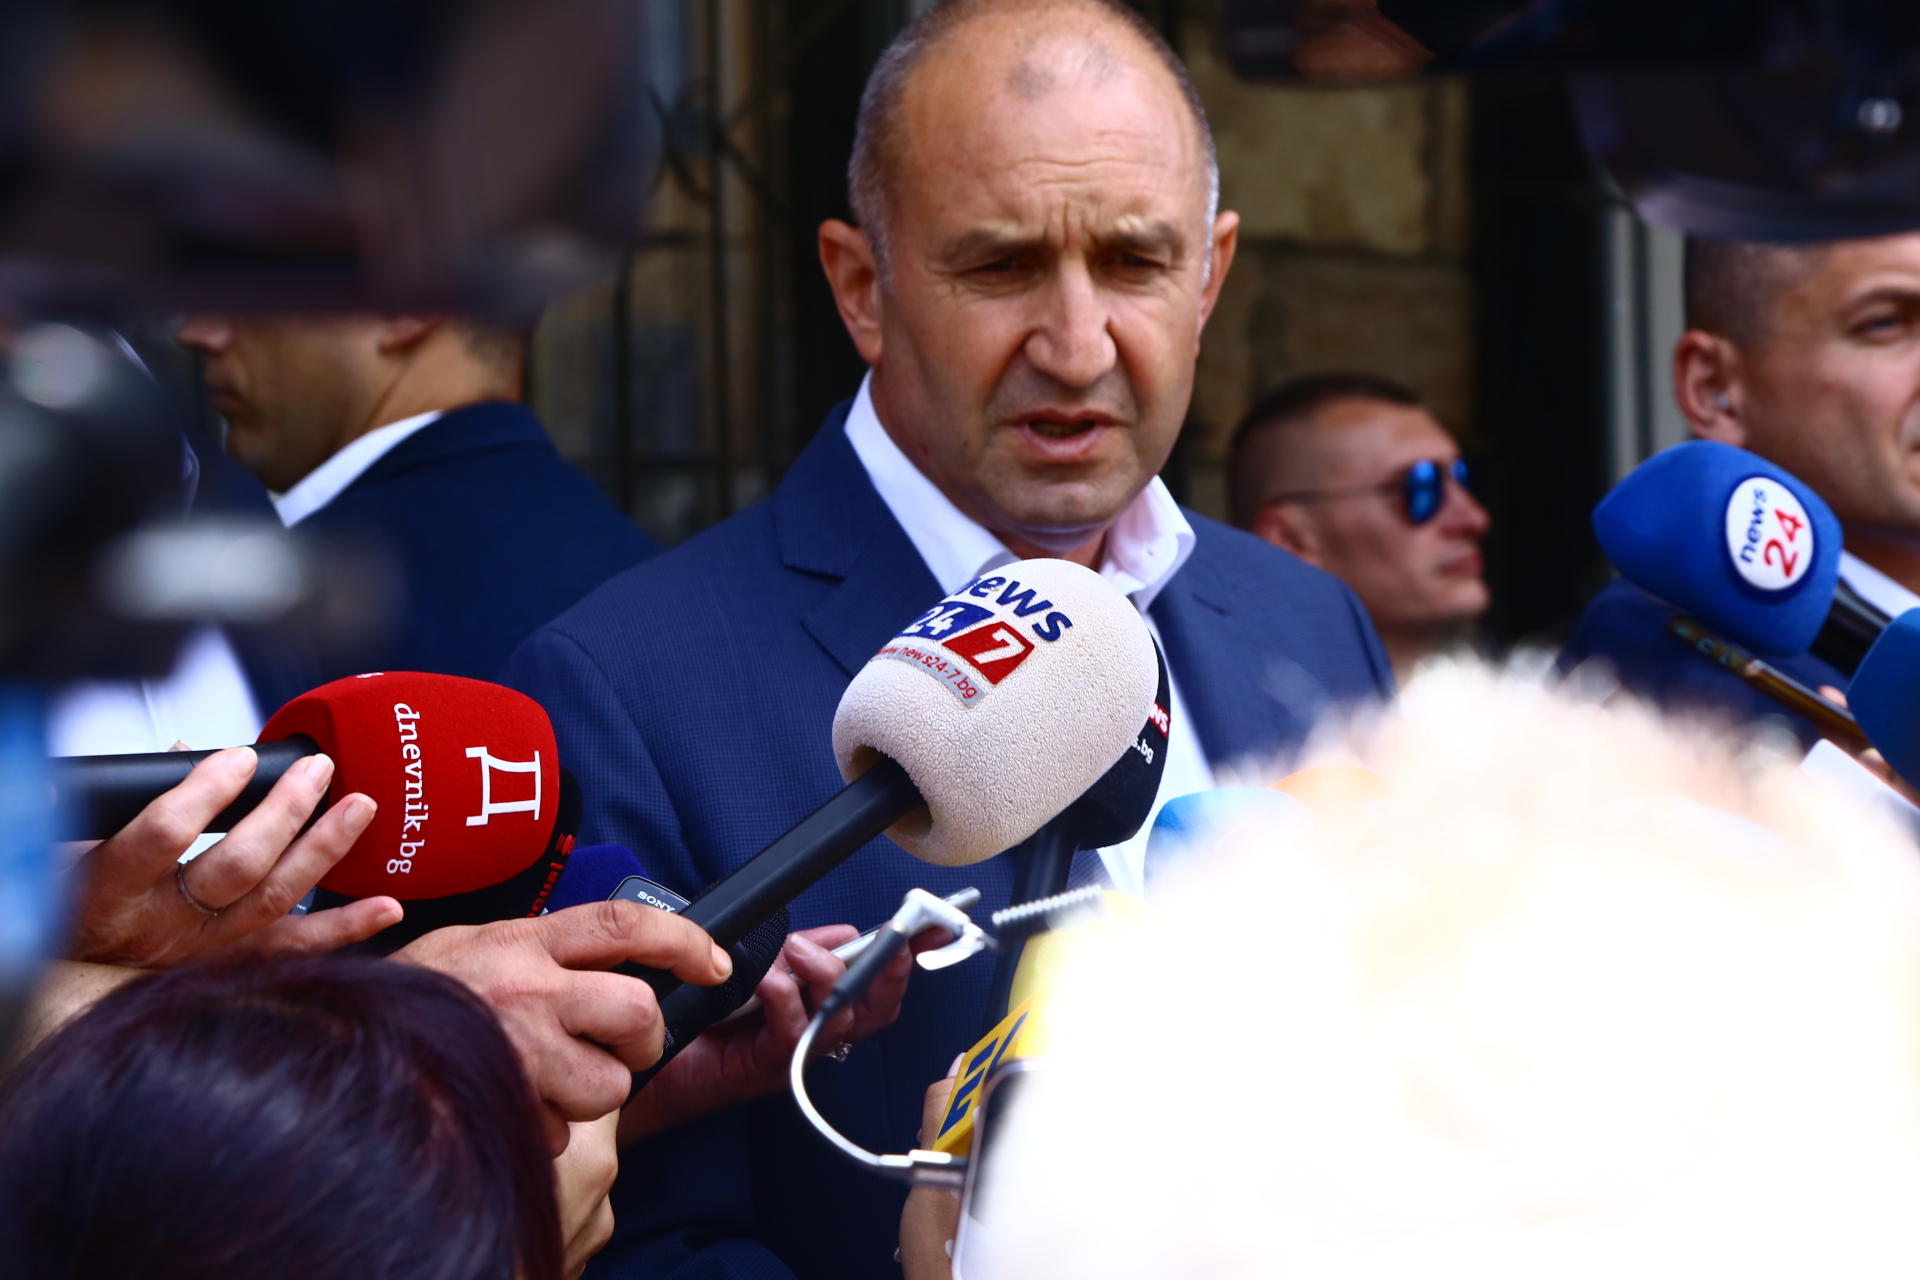 Първи подробности за дипломатическия скандал с Радев в Черна гора